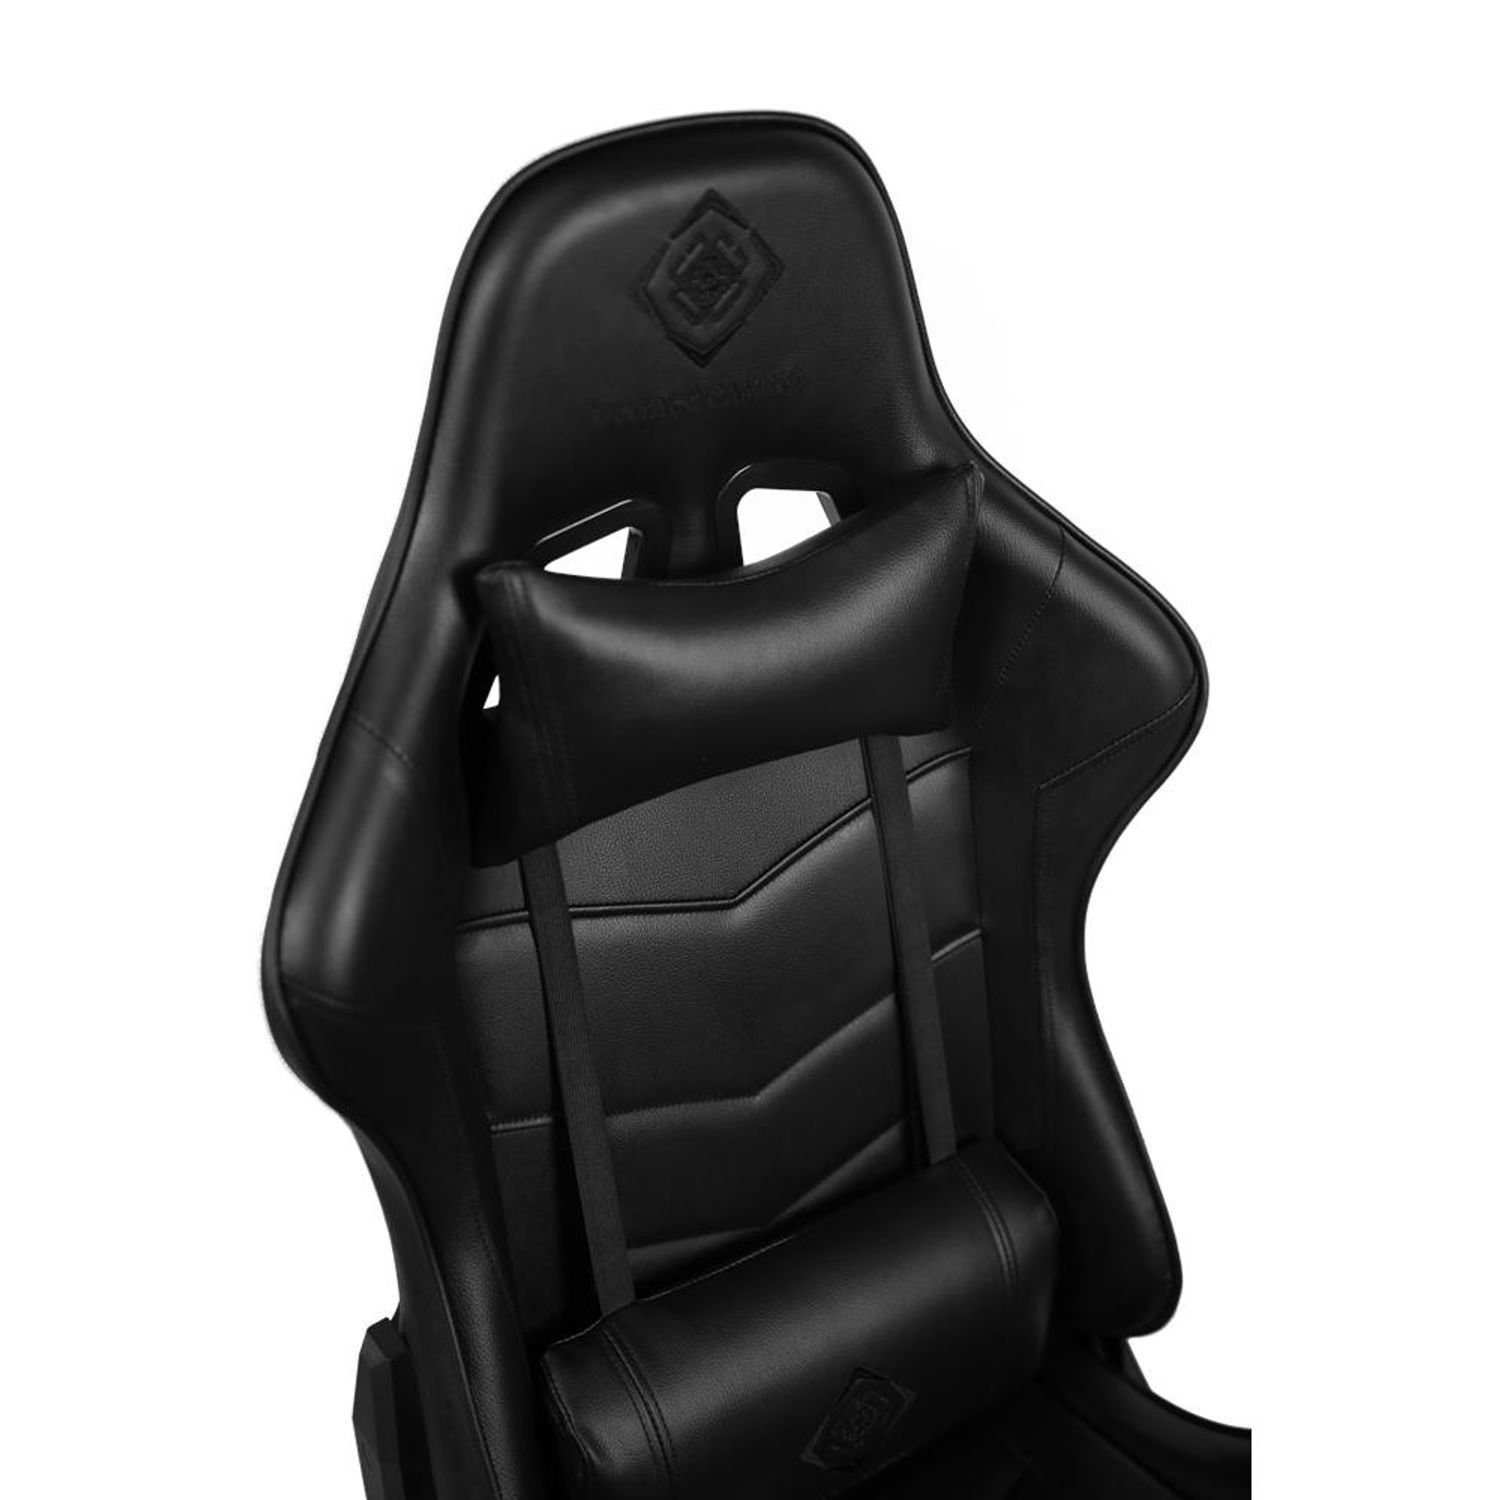 Herstellergarantie (kein Gamer inkl. schw., Rückenlehne, hohe Kissen Stuhl Stuhl Jahre groß, Gaming-Stuhl Gaming DELTACO schwarz 110kg 5 Set), extra Jumbo